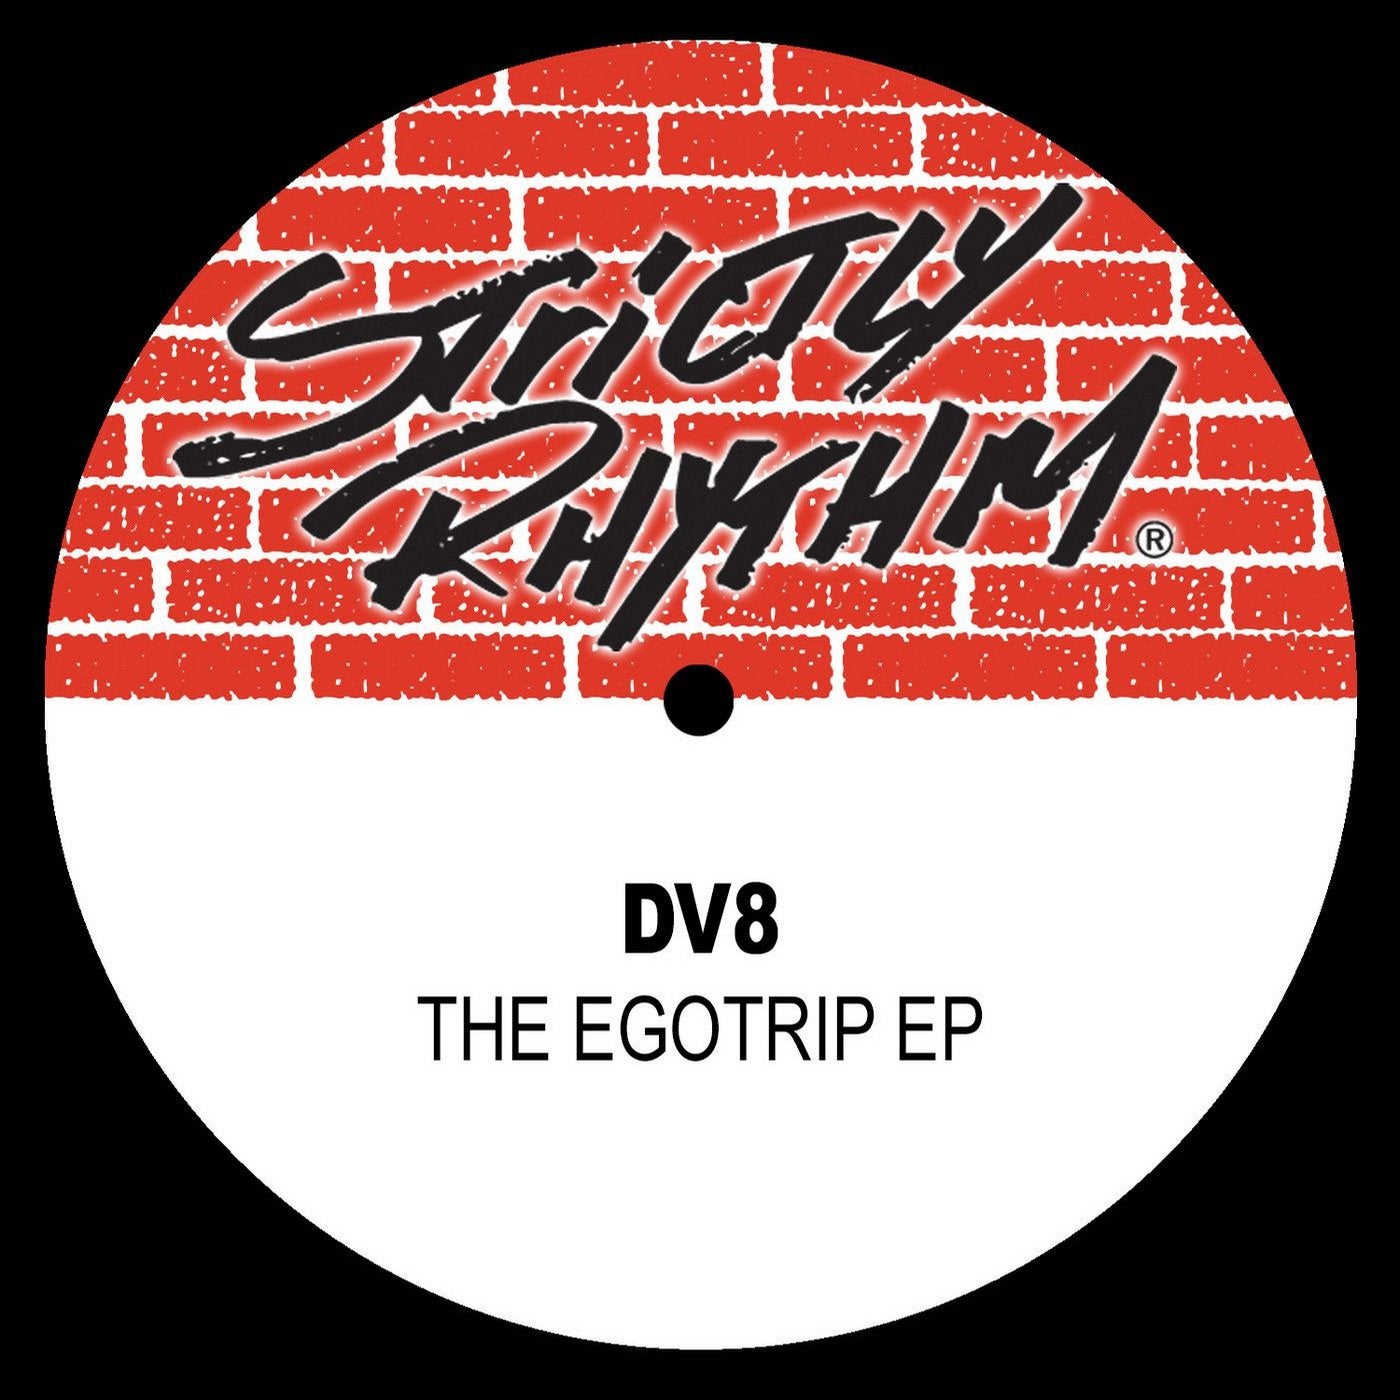 The Egotrip EP